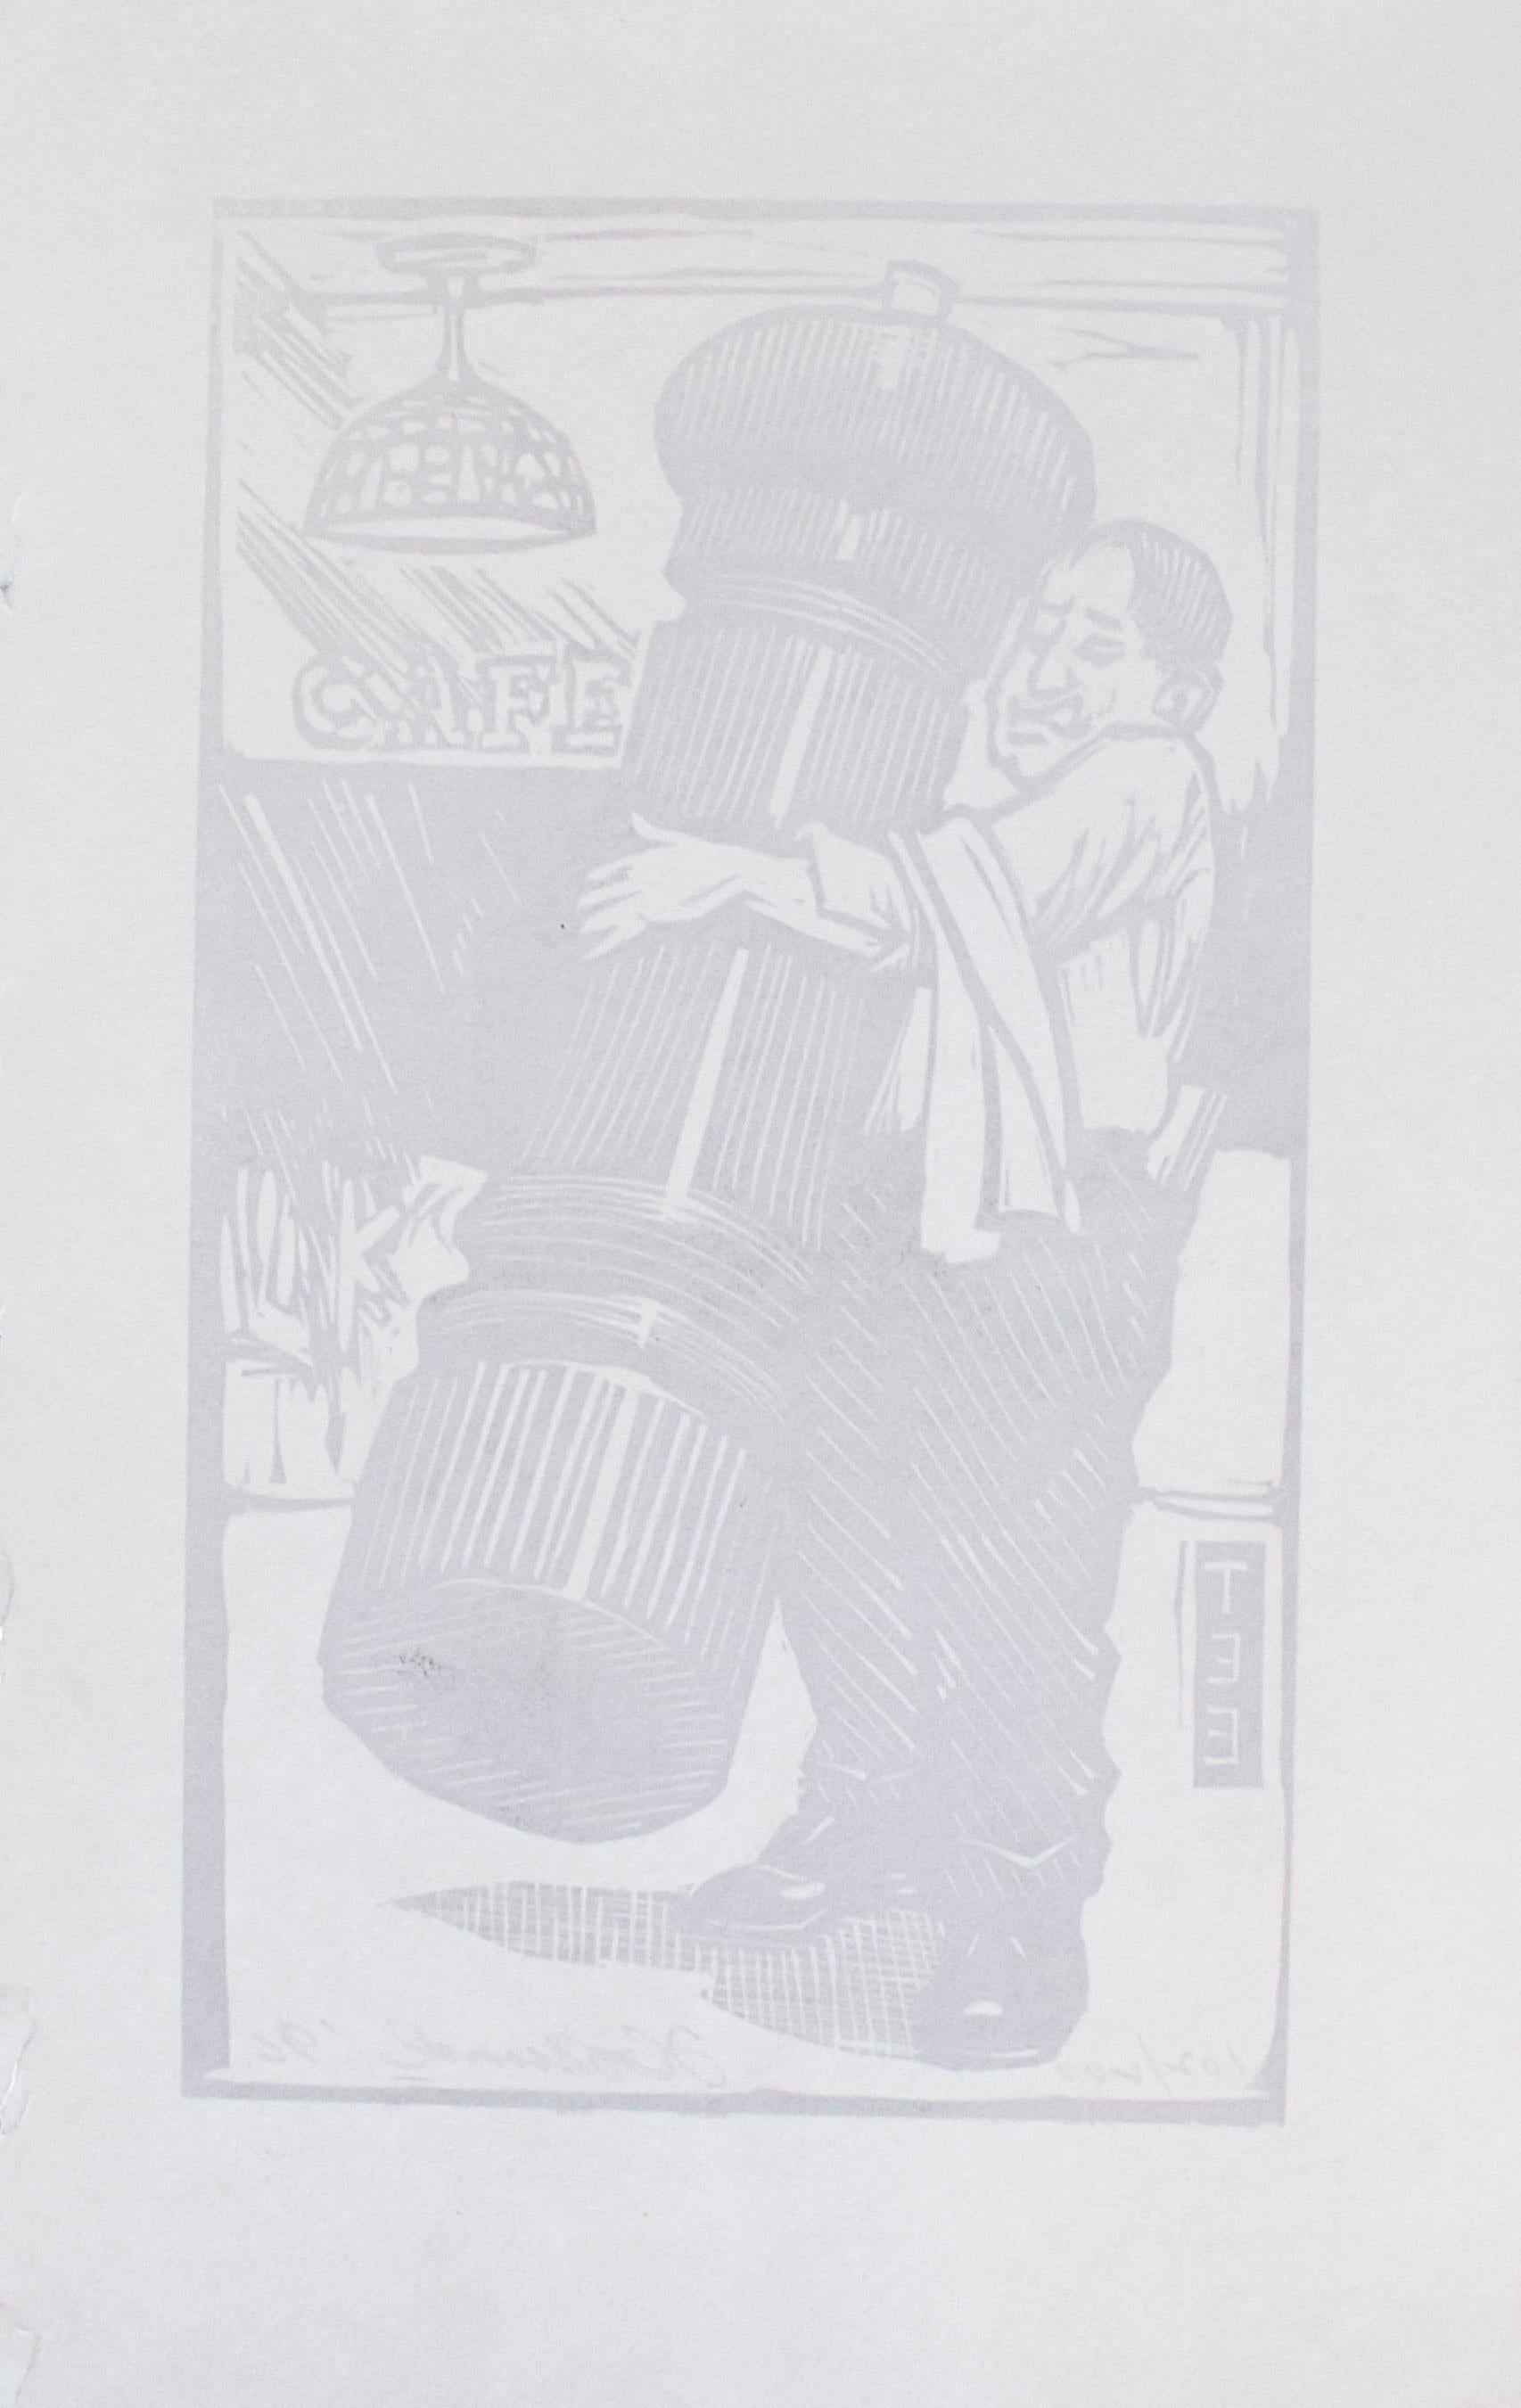 Tim Engelland (américain, 1950-2012)
Un peu de poivre noir fraîchement moulu ?, 1996
Linogravure
11 x 7 in.
Signé et daté en bas à droite : AT&T 996
Signé et numéroté en bas à gauche : 102/200
Édition de 200 exemplaires imprimés à la main sur une